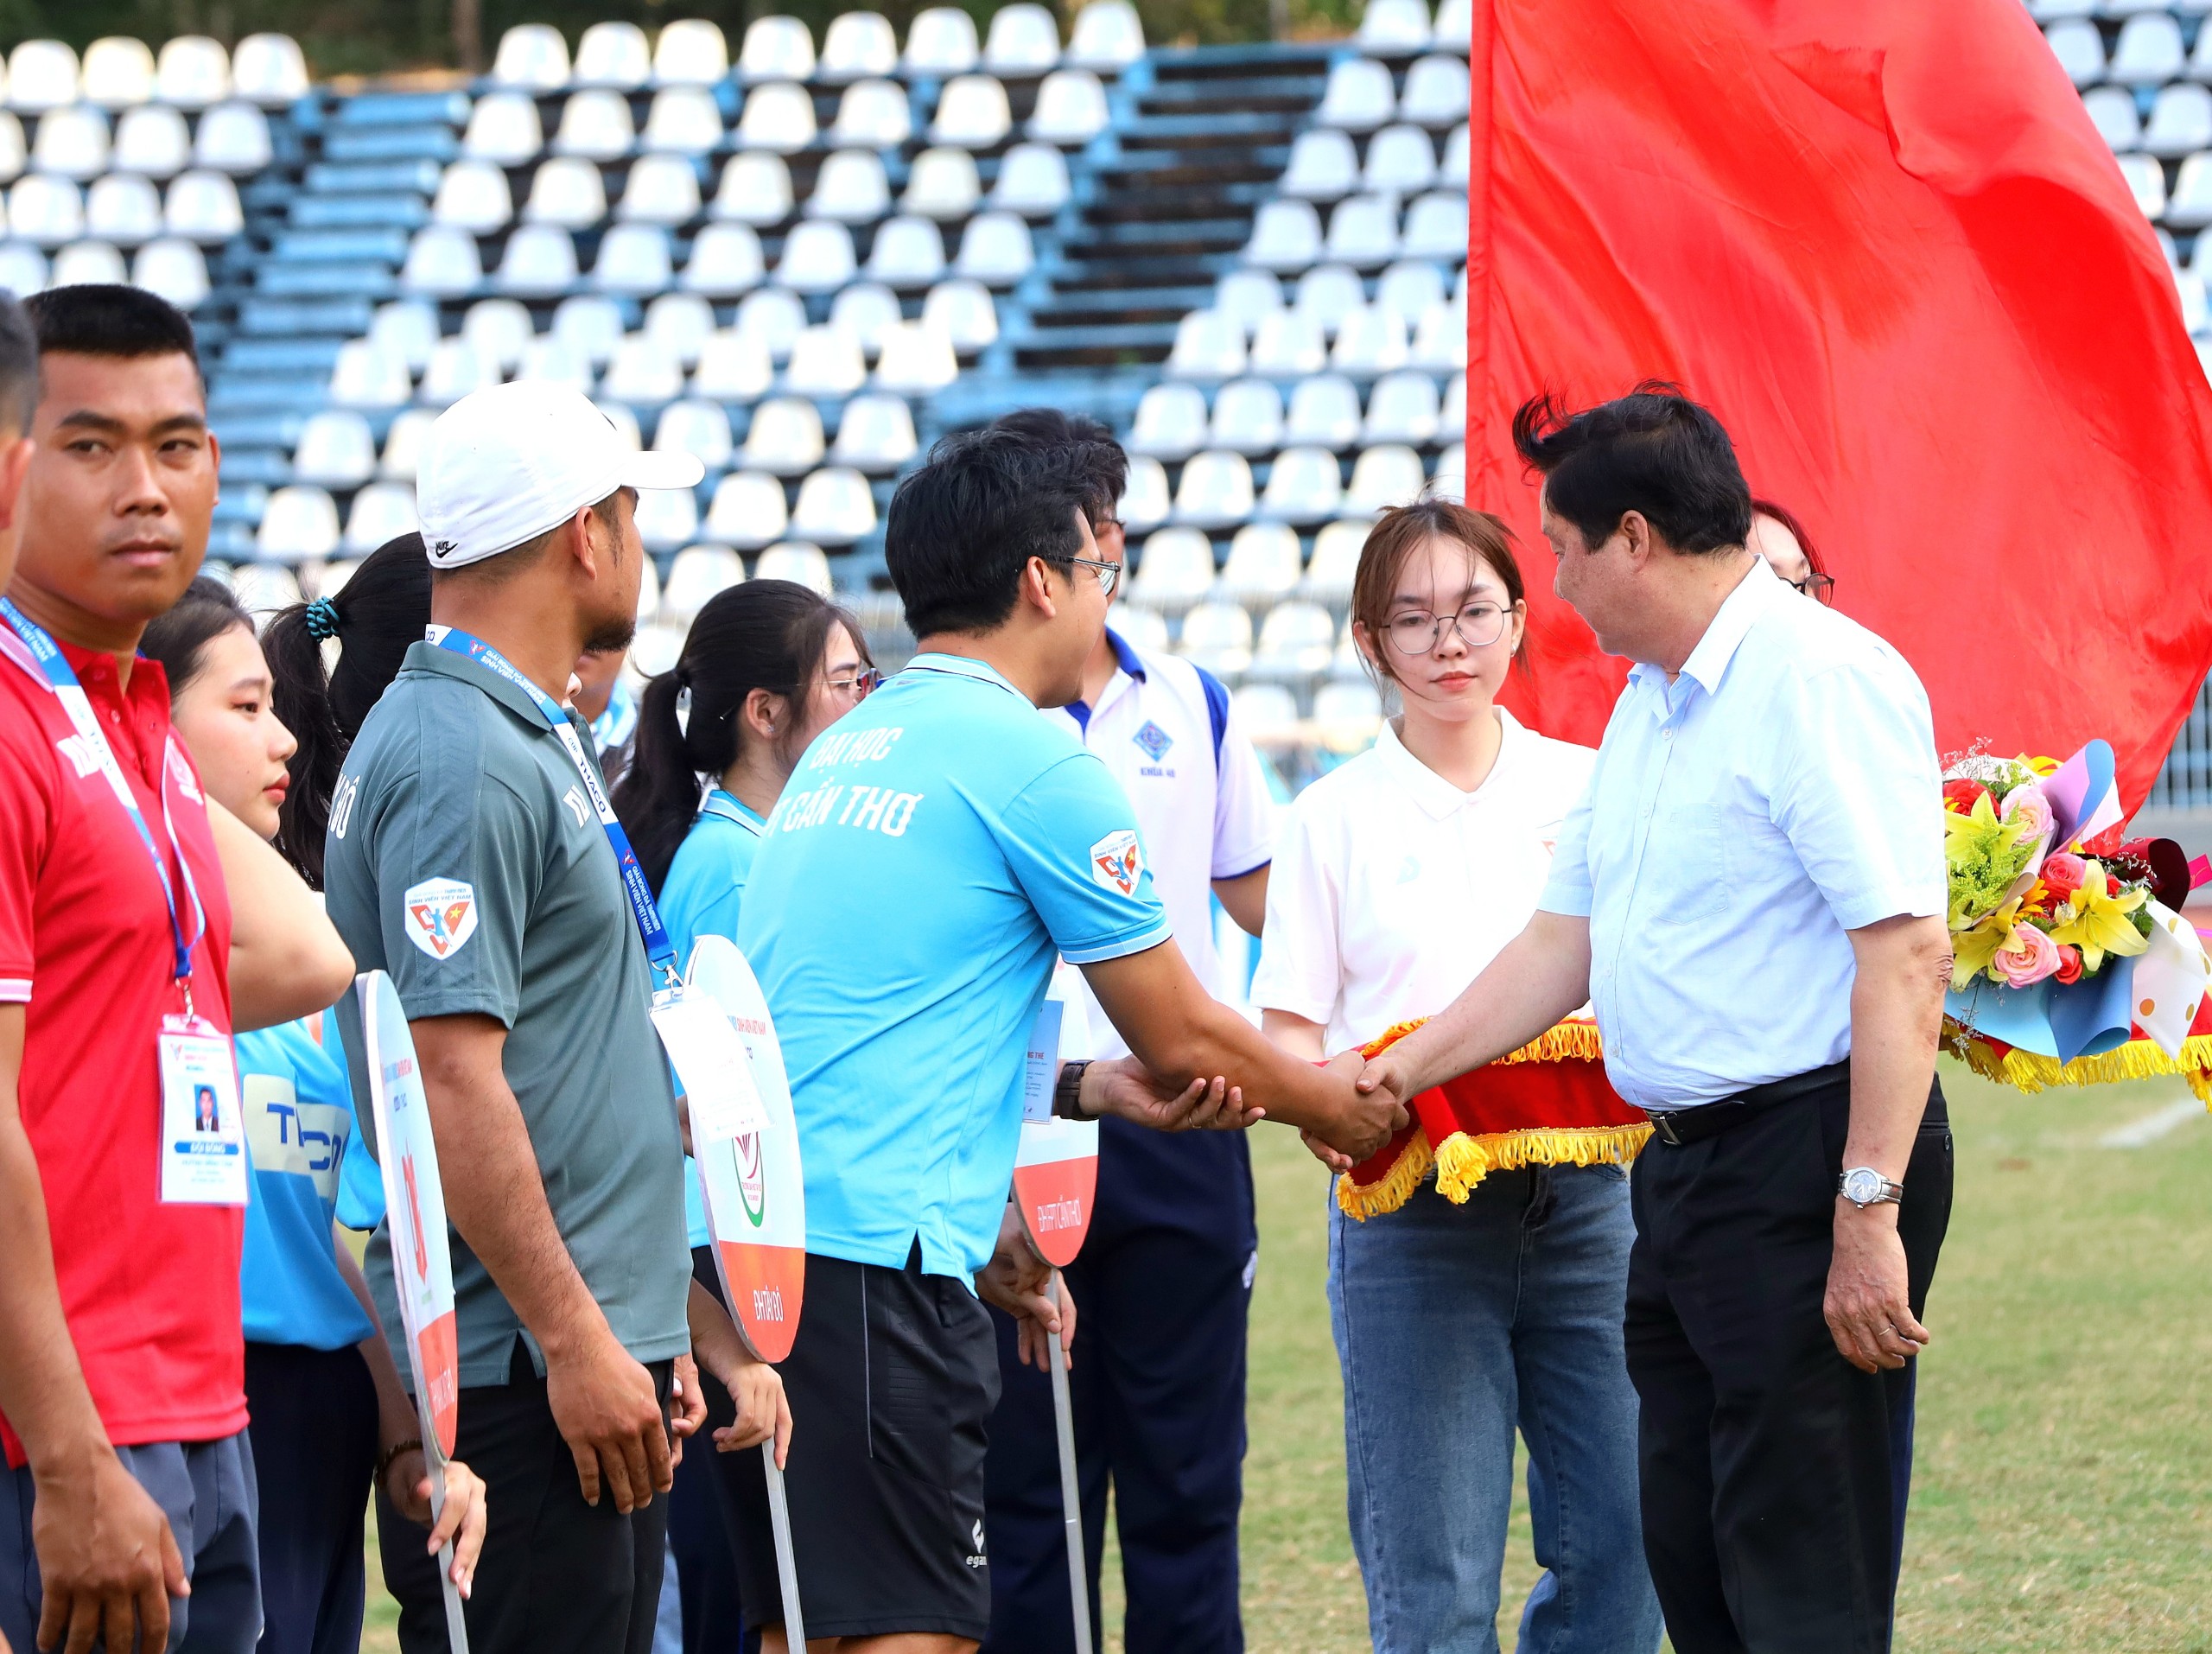 Ông Phạm Văn Hiểu - Phó bí thư thường trực Thành ủy Cần Thơ, Chủ tịch HĐND TP. Cần Thơ bắt tay động viên các cầu thủ.